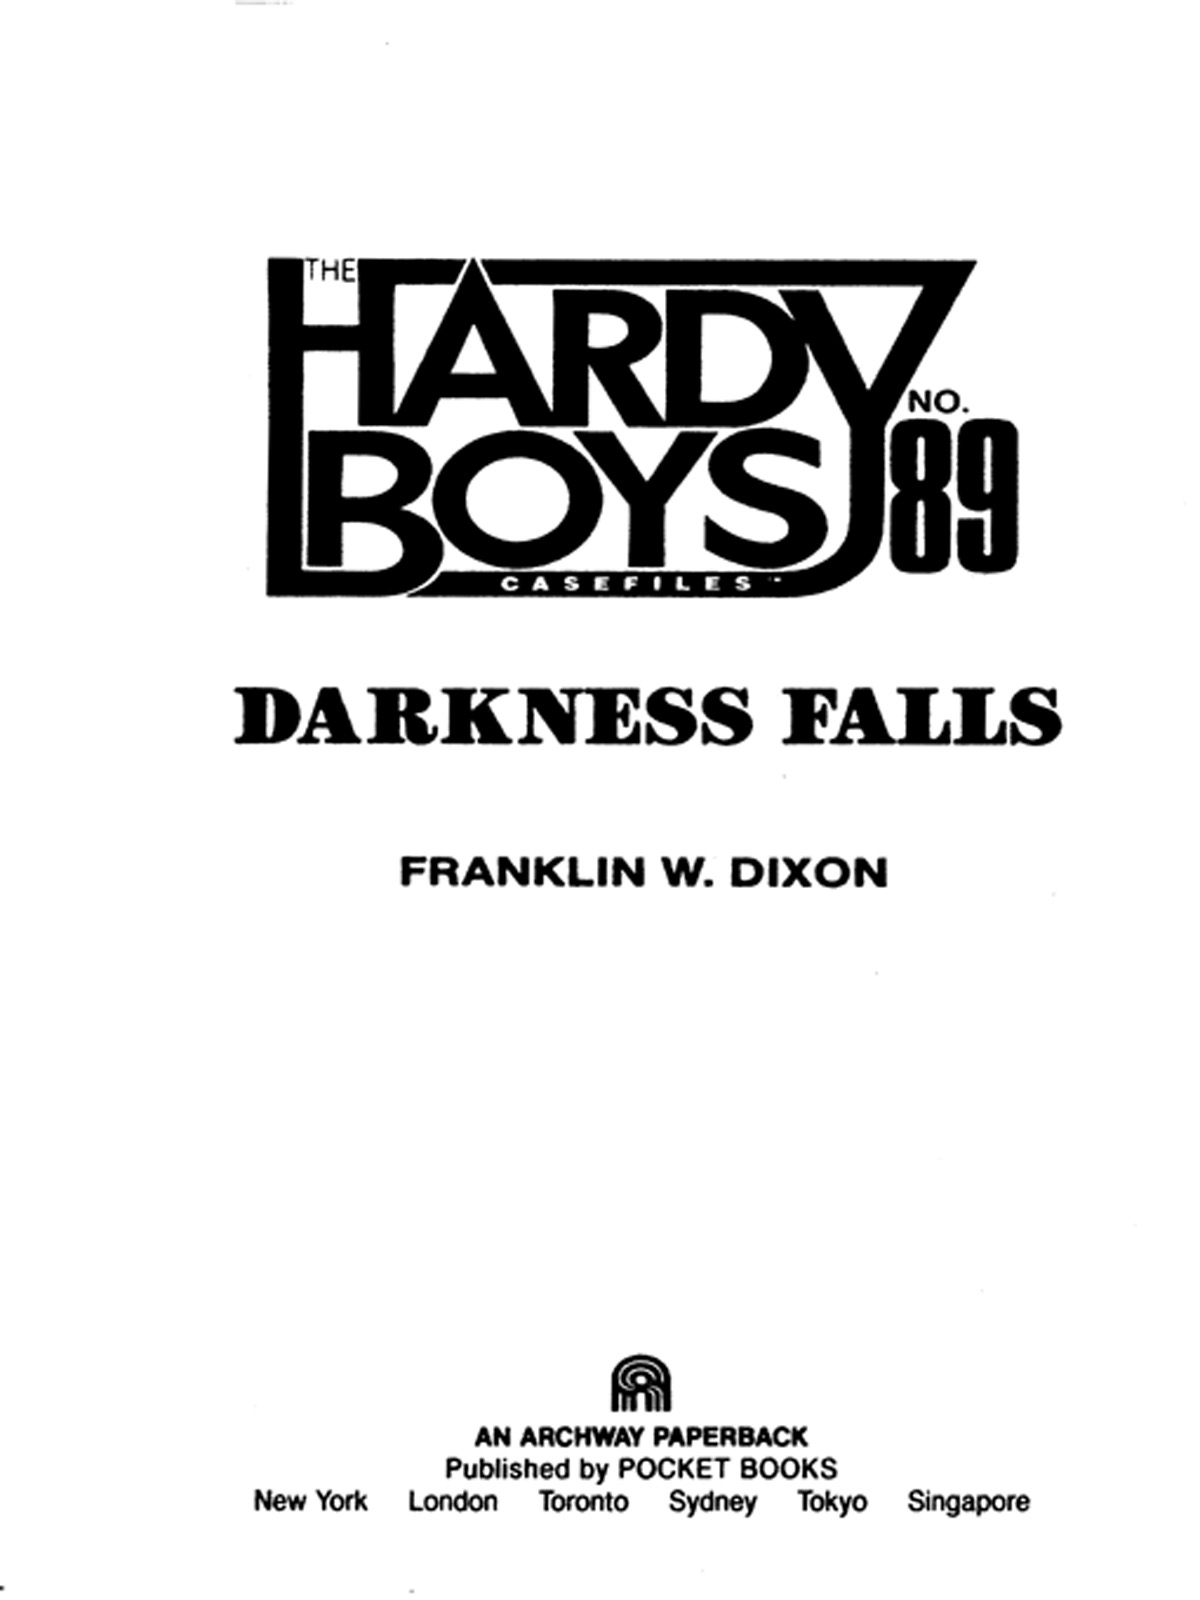 Darkness Falls (1994) by Franklin W. Dixon